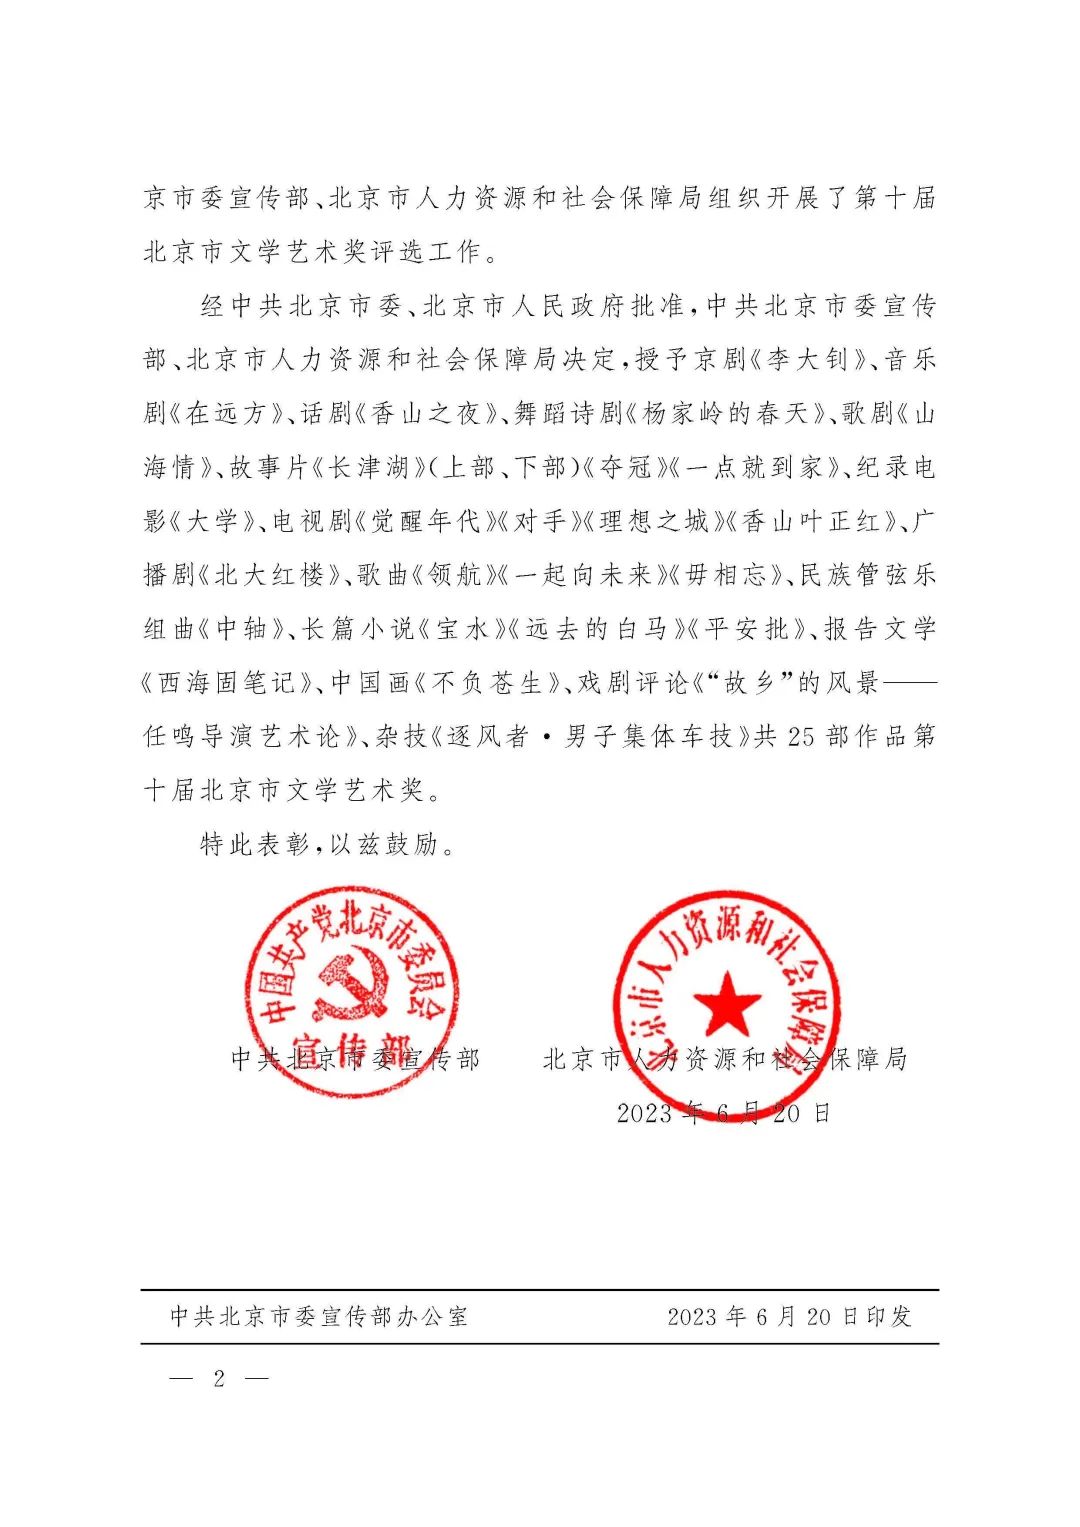 中共北京市委宣传部 北京市人力资源和社会保障局关于表彰第十届北京市文学艺术奖获奖作品的决定